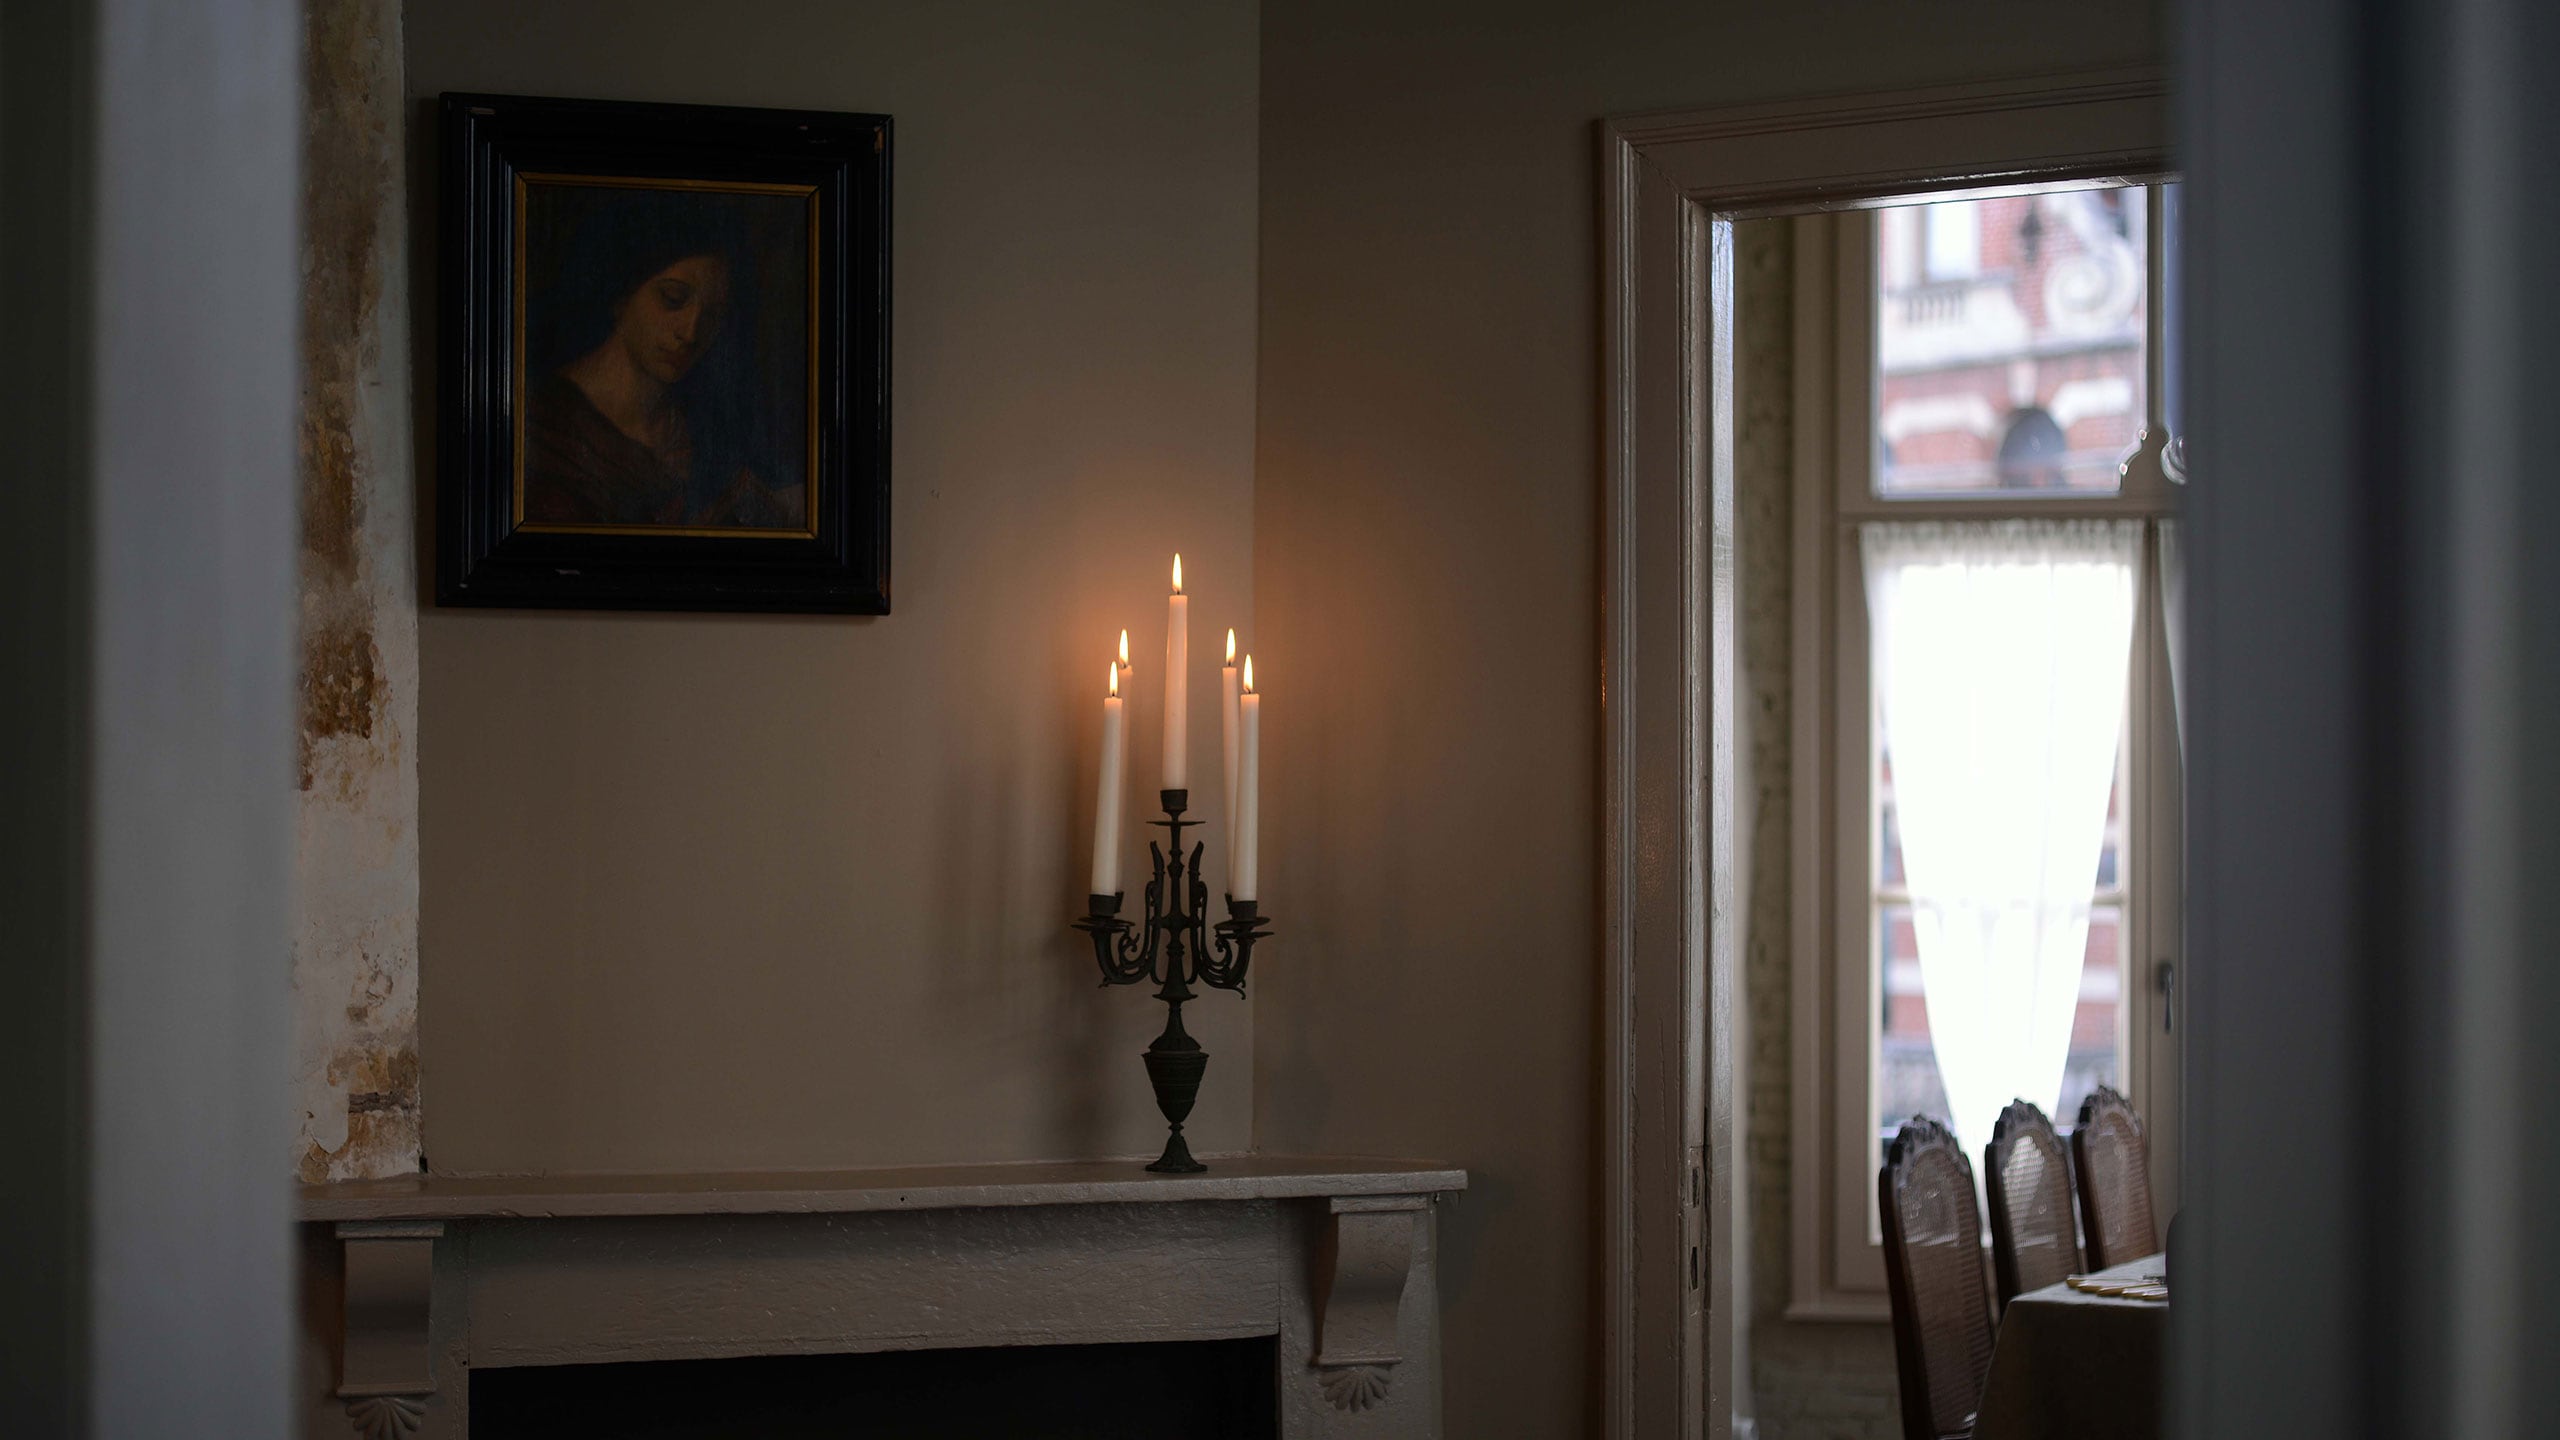 Une salle à manger vue depuis la porte, avec trois bougies allumées sur un candélabre surmontant la cheminée.